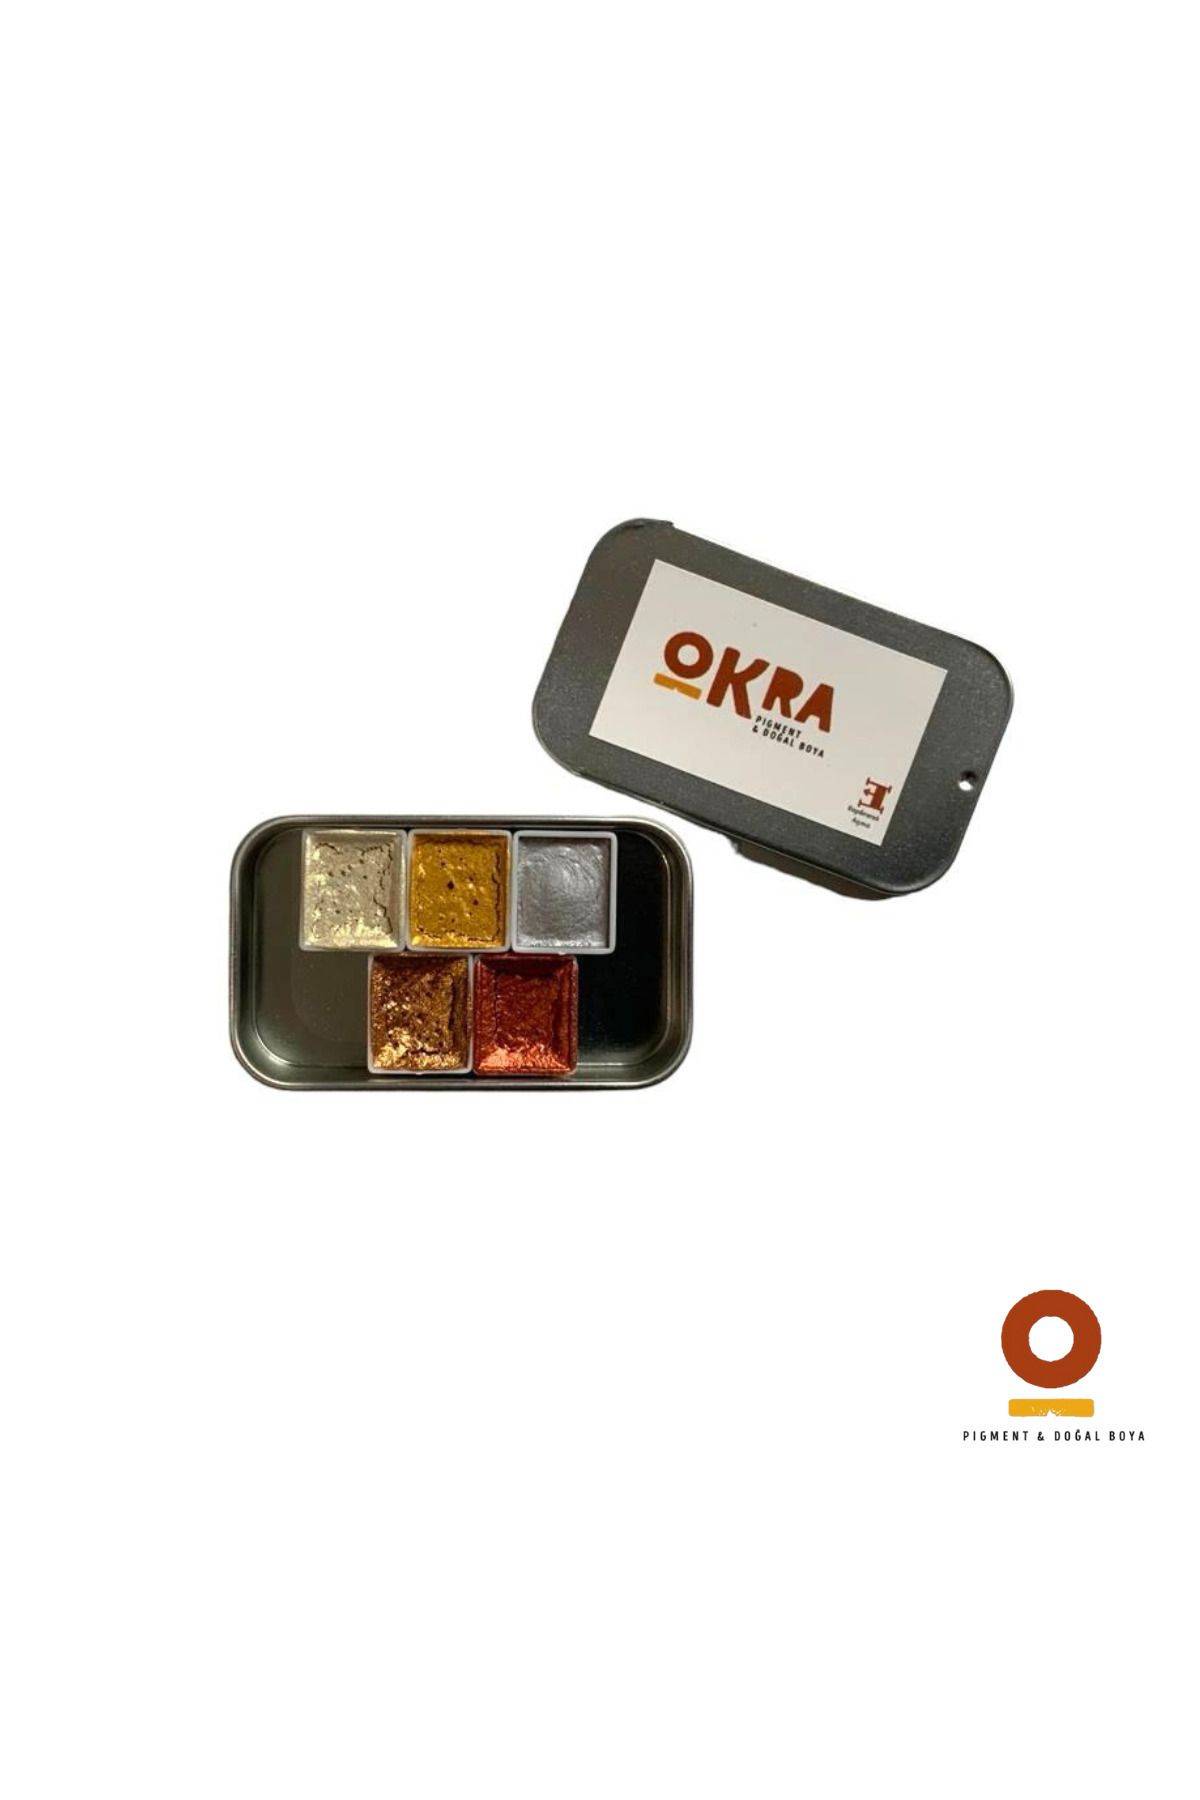 Okra Pigment ve Doğal Boya Okra Handmade Metalik Suluboya Set / 5 Renk